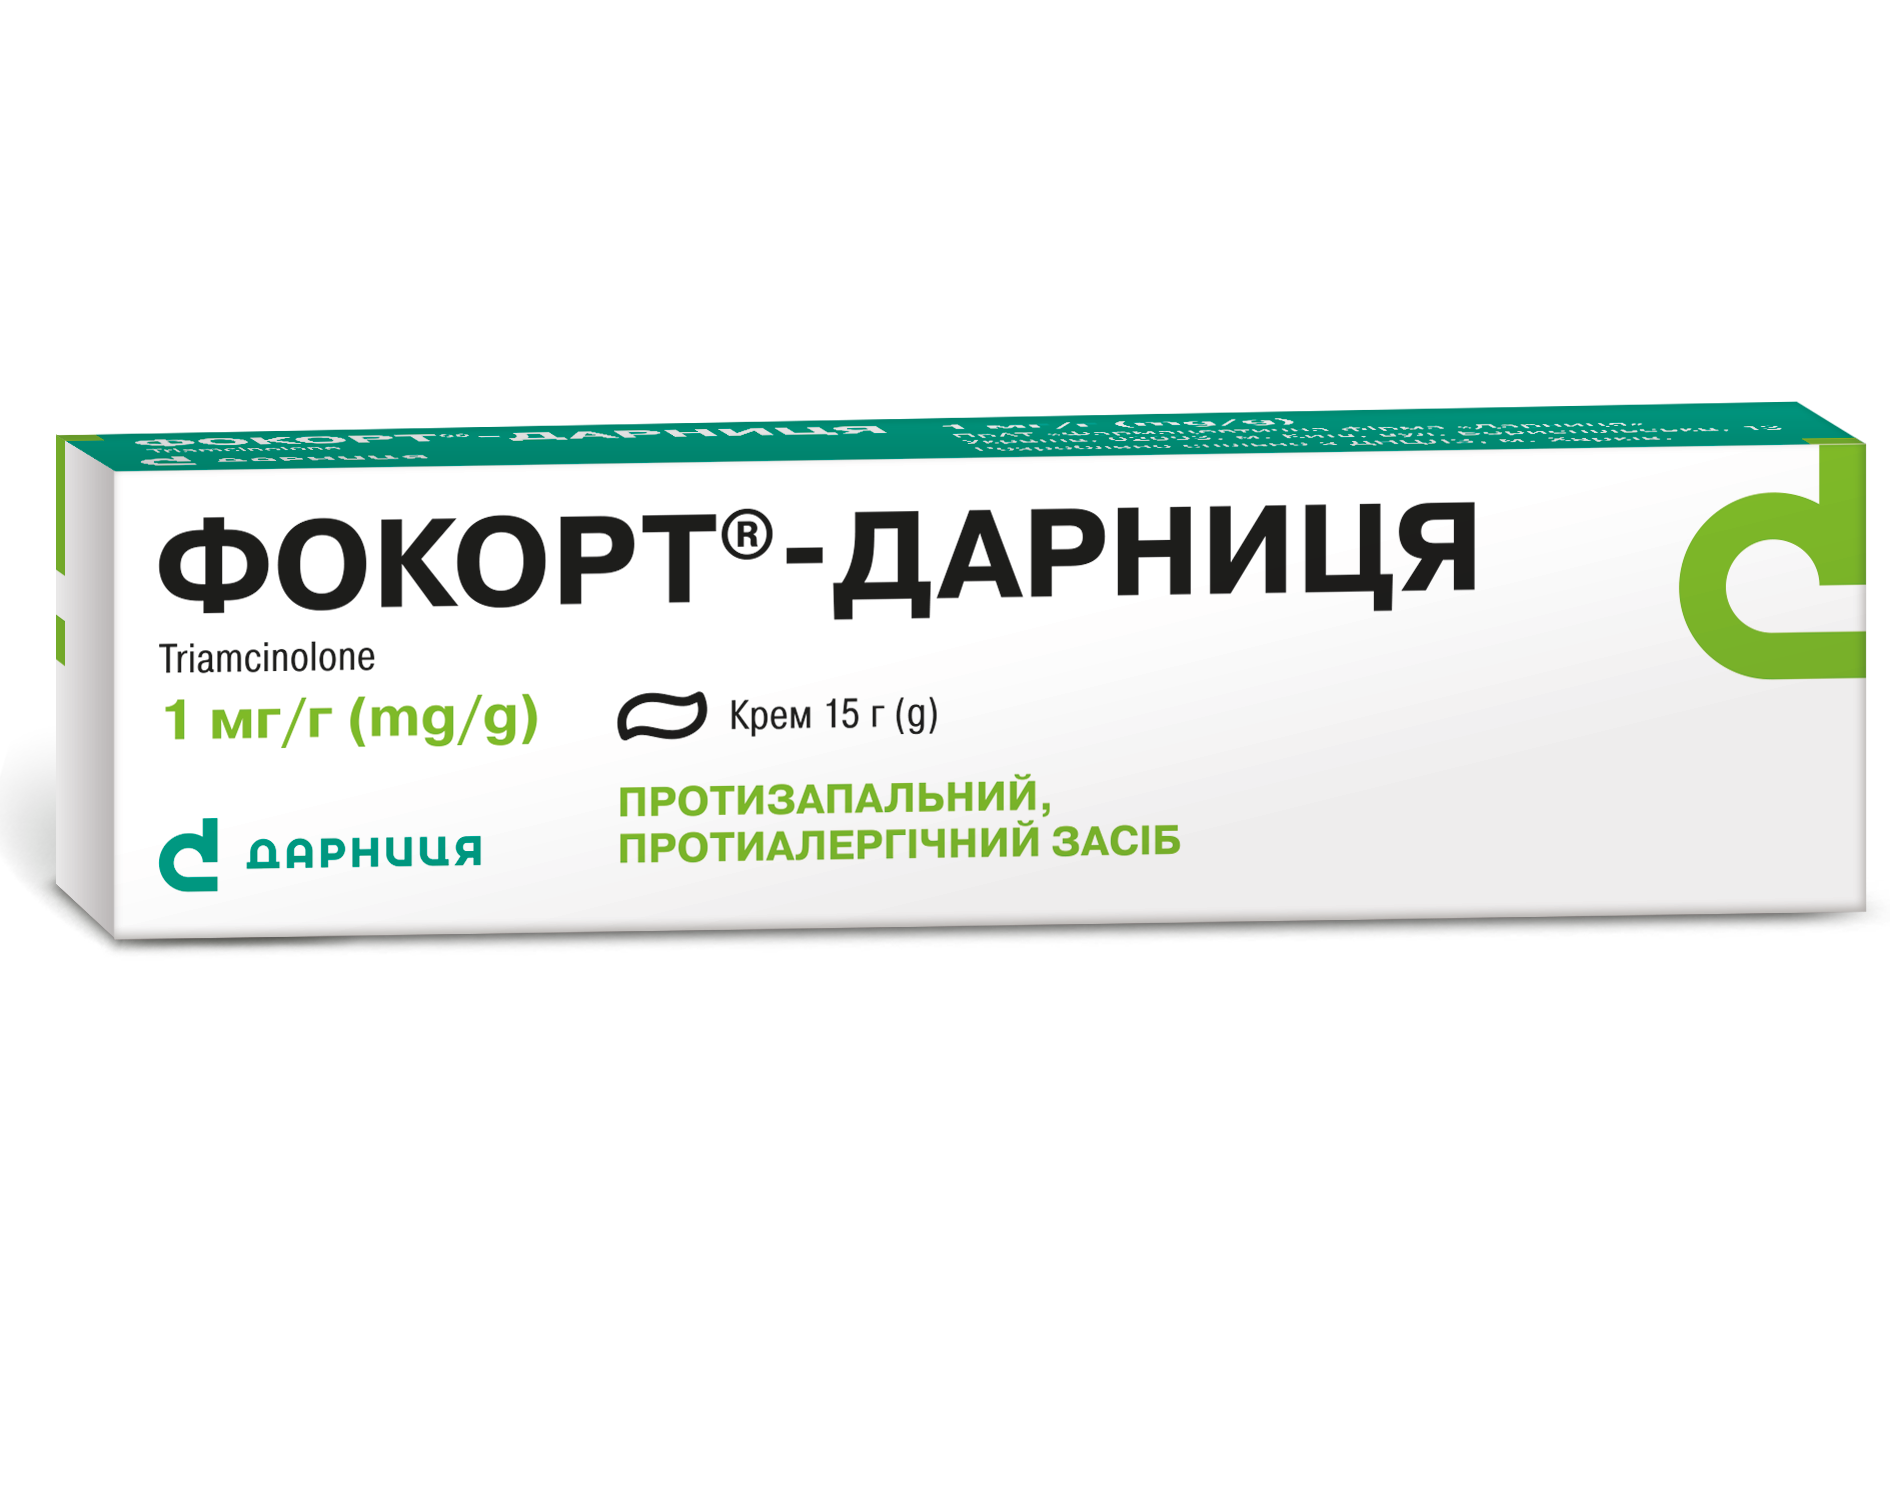 Фокорт®-Дарница